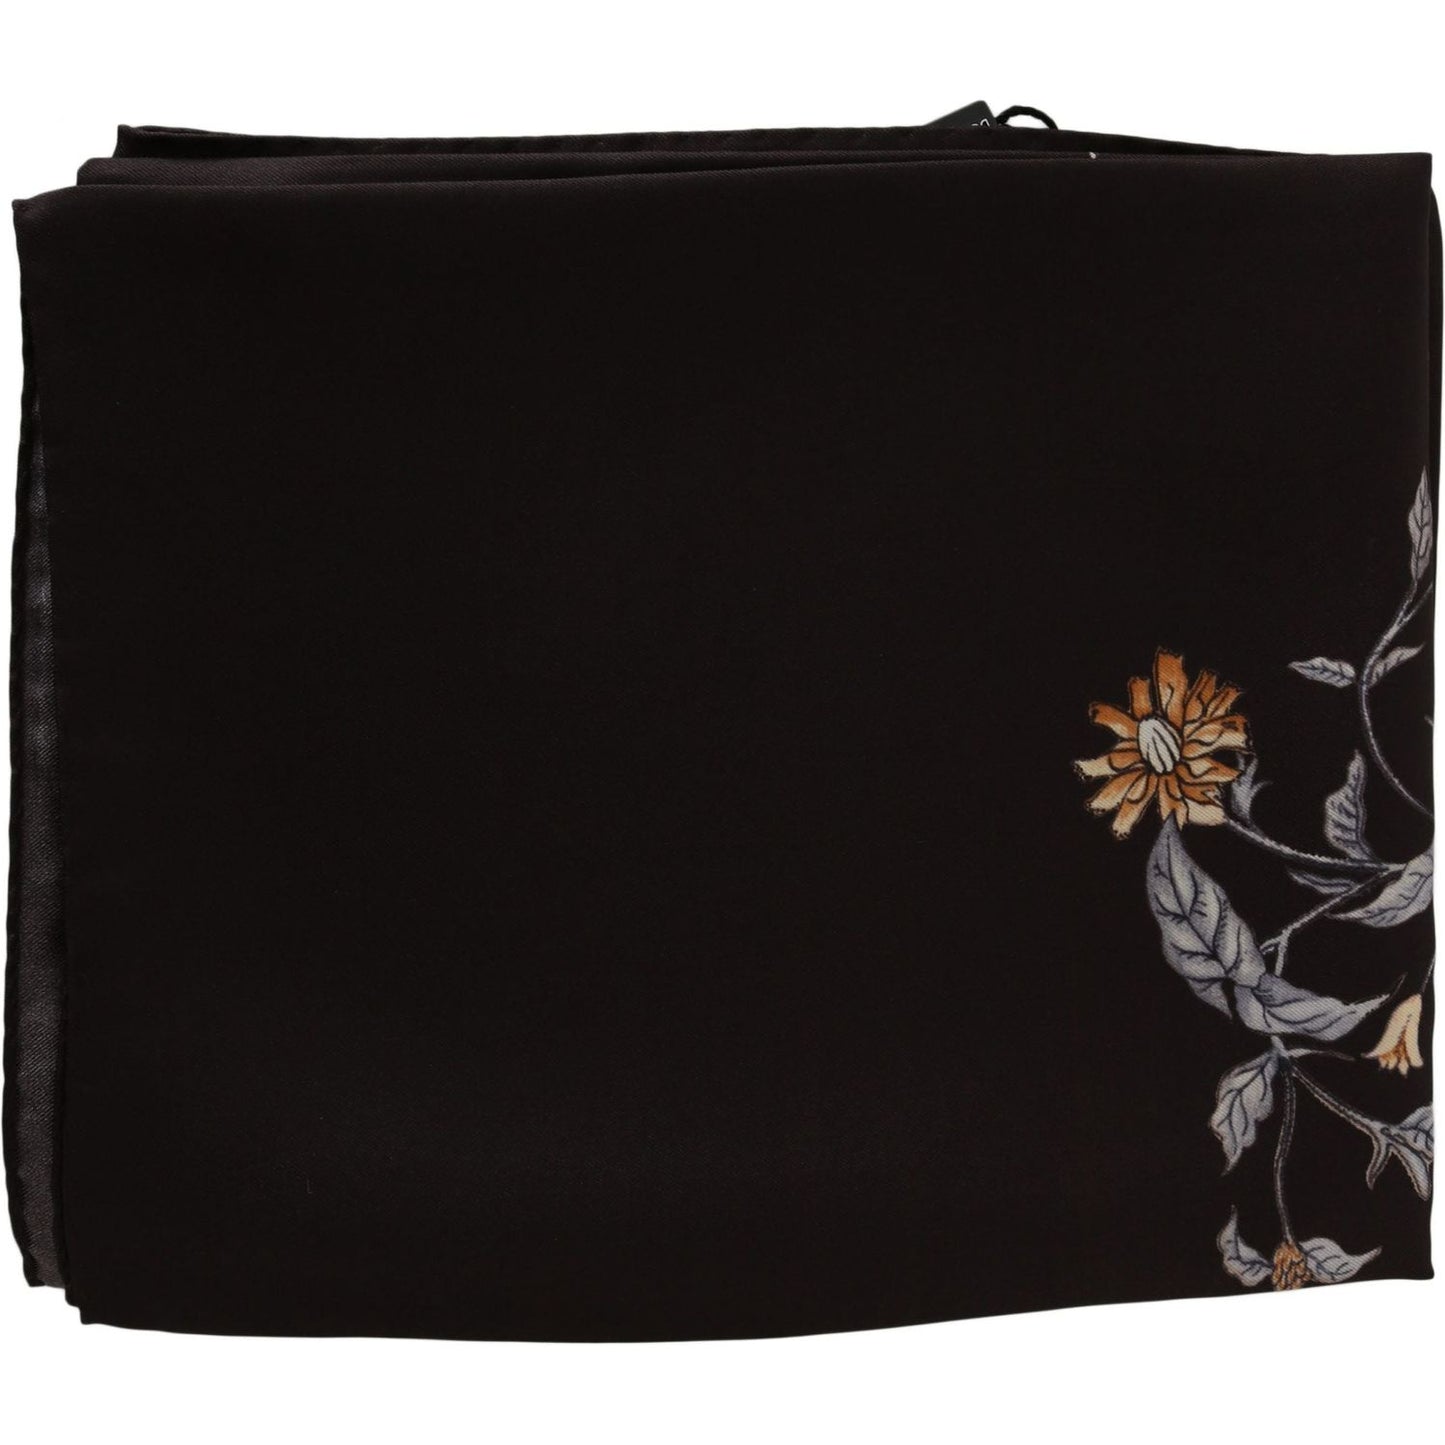 Dolce & Gabbana Elegant Silk Scarf Wrap in Luxe Brown Silk Wrap Shawls brown-100-silk-bird-print-wrap-80cm-x-95cm-rrp-scarf IMG_3733-scaled-b1a487b8-b10.jpg